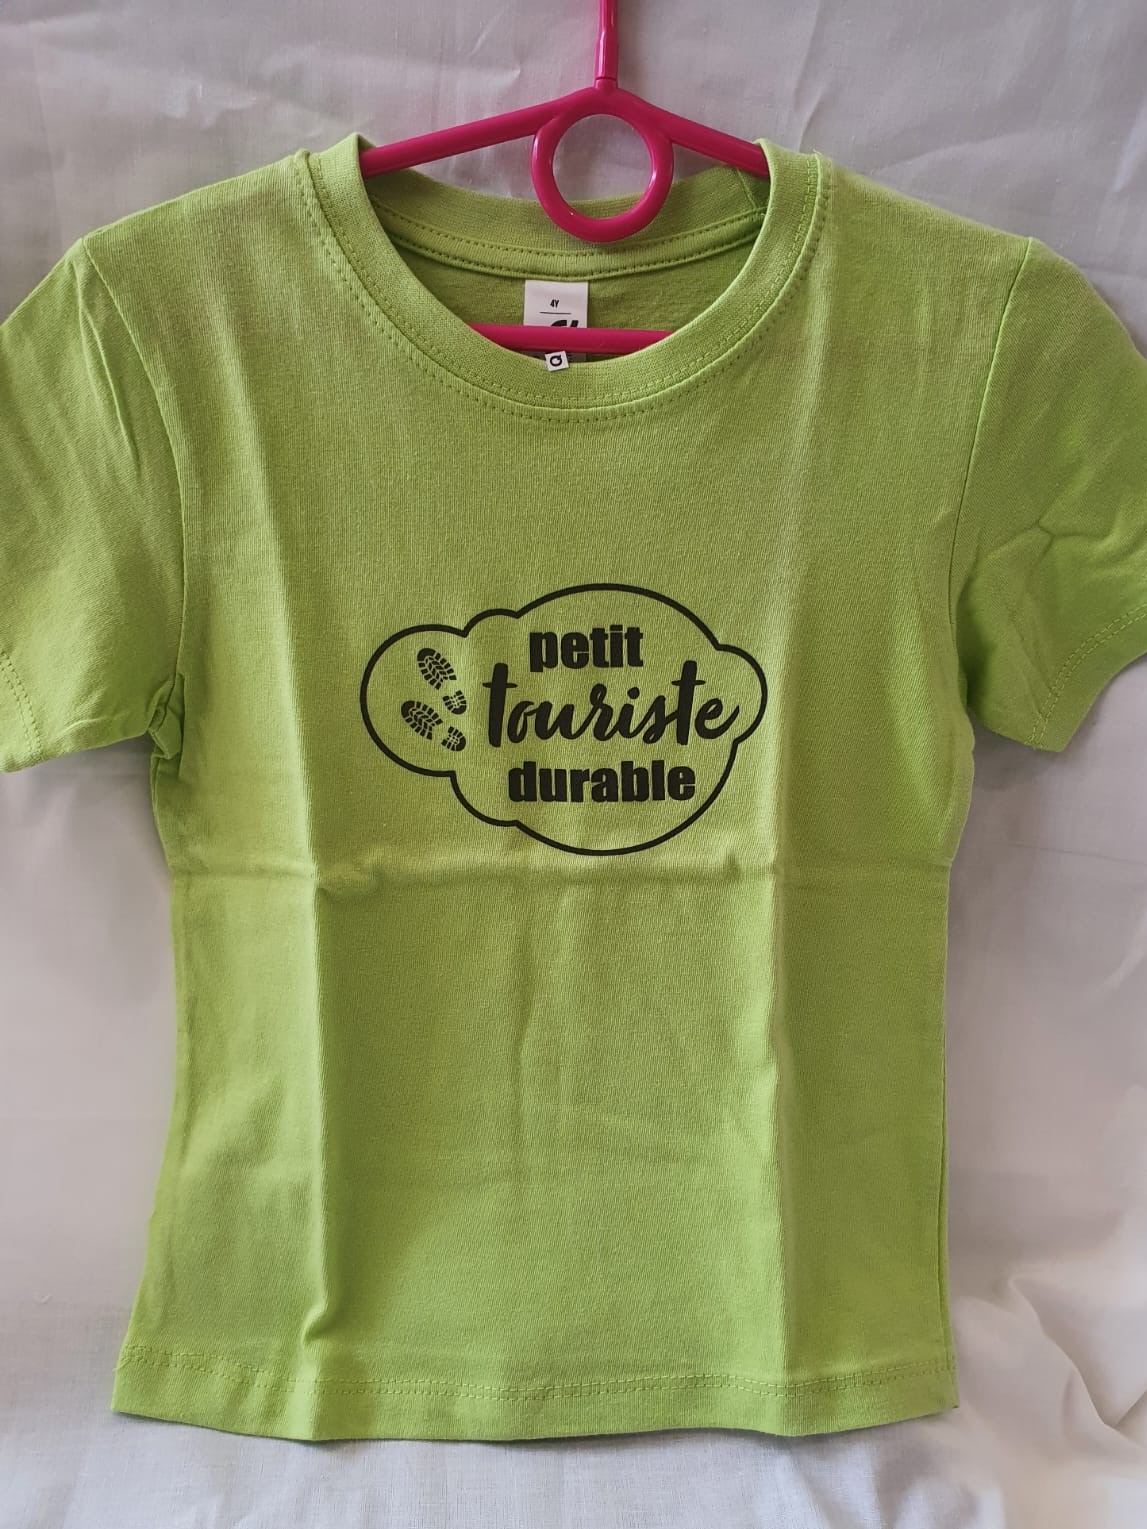 Tee-shirt enfant “Petit touriste durable” vert – 4 ans